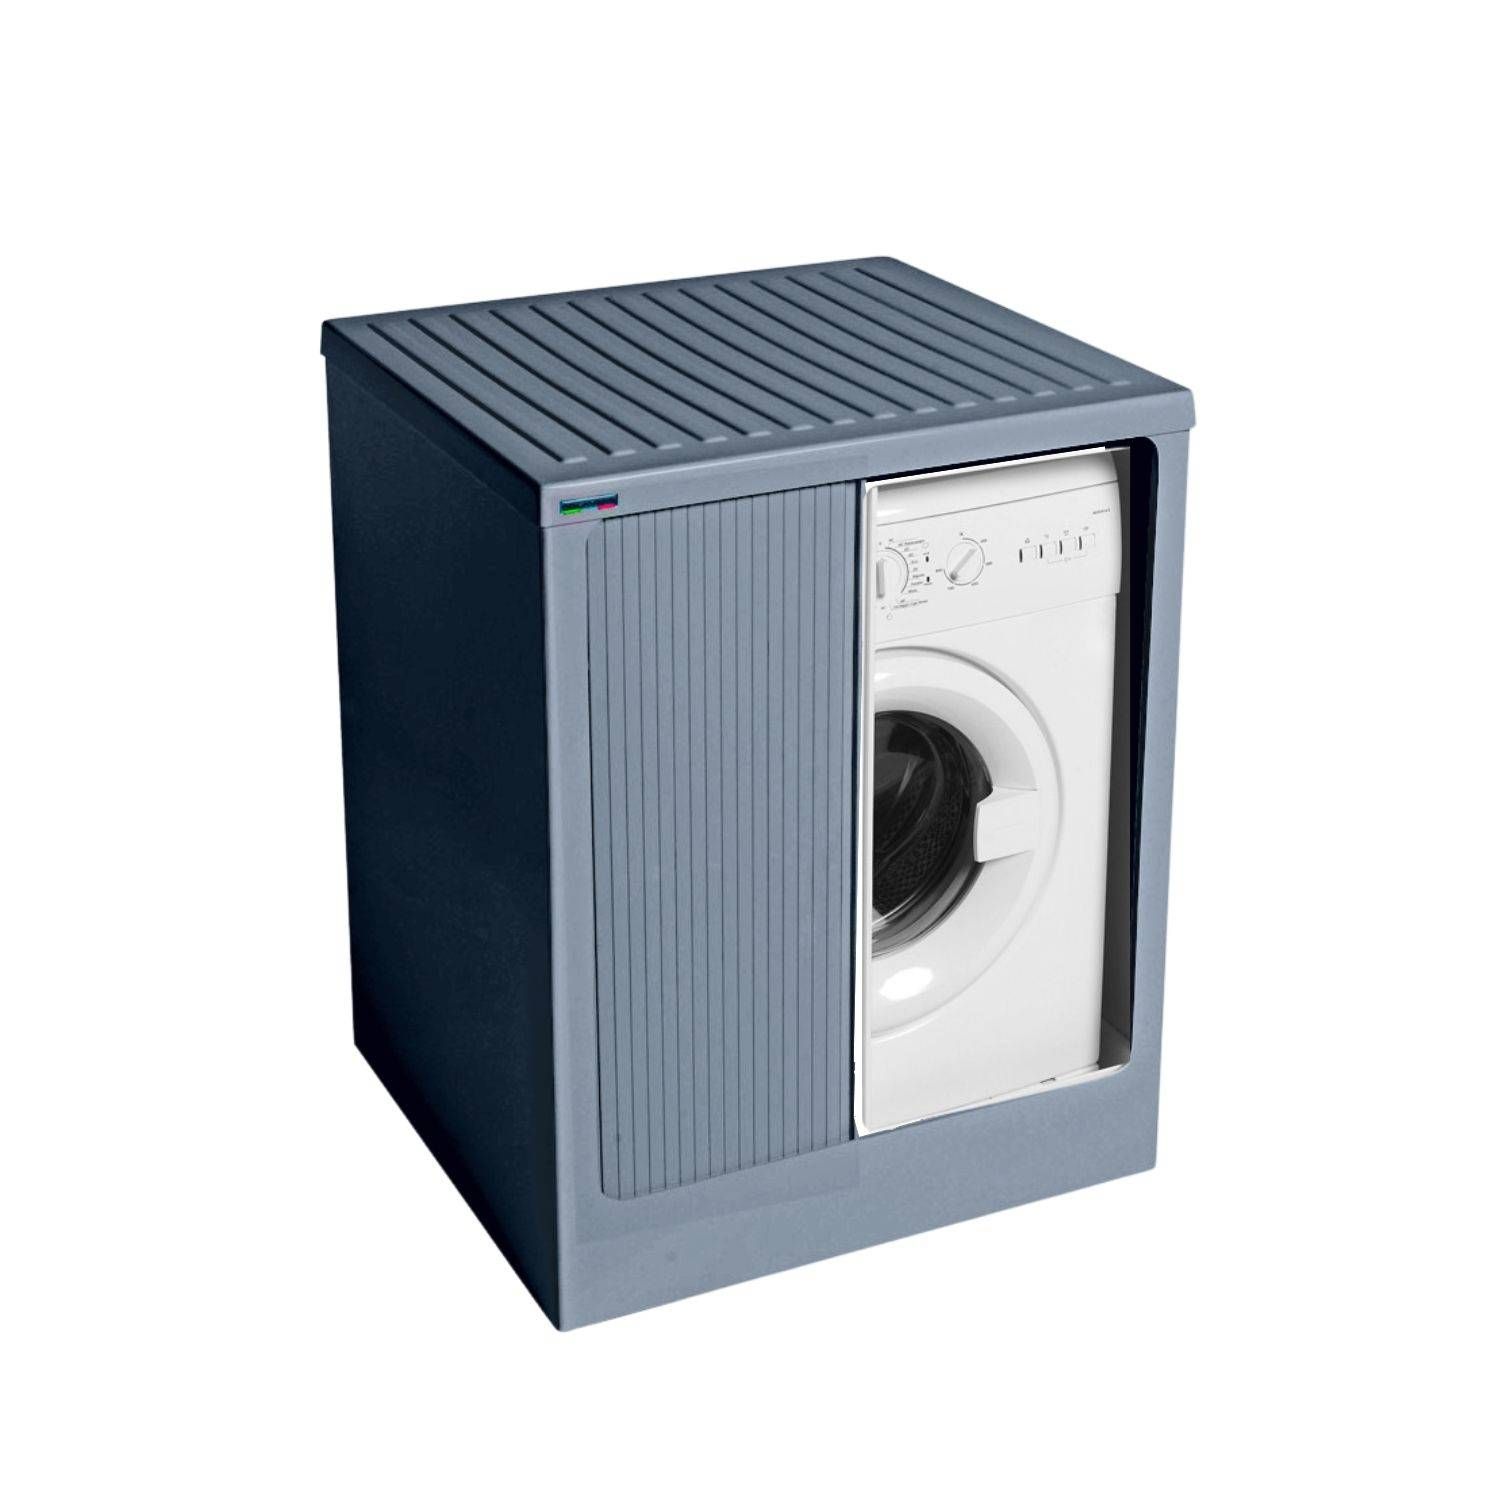 https://www.ediliamo.com/63086-thickbox_default/mobile-copri-lavatrice-72x68x91h-cm-con-serranda-grigio-lavacril-box-colavene.jpg